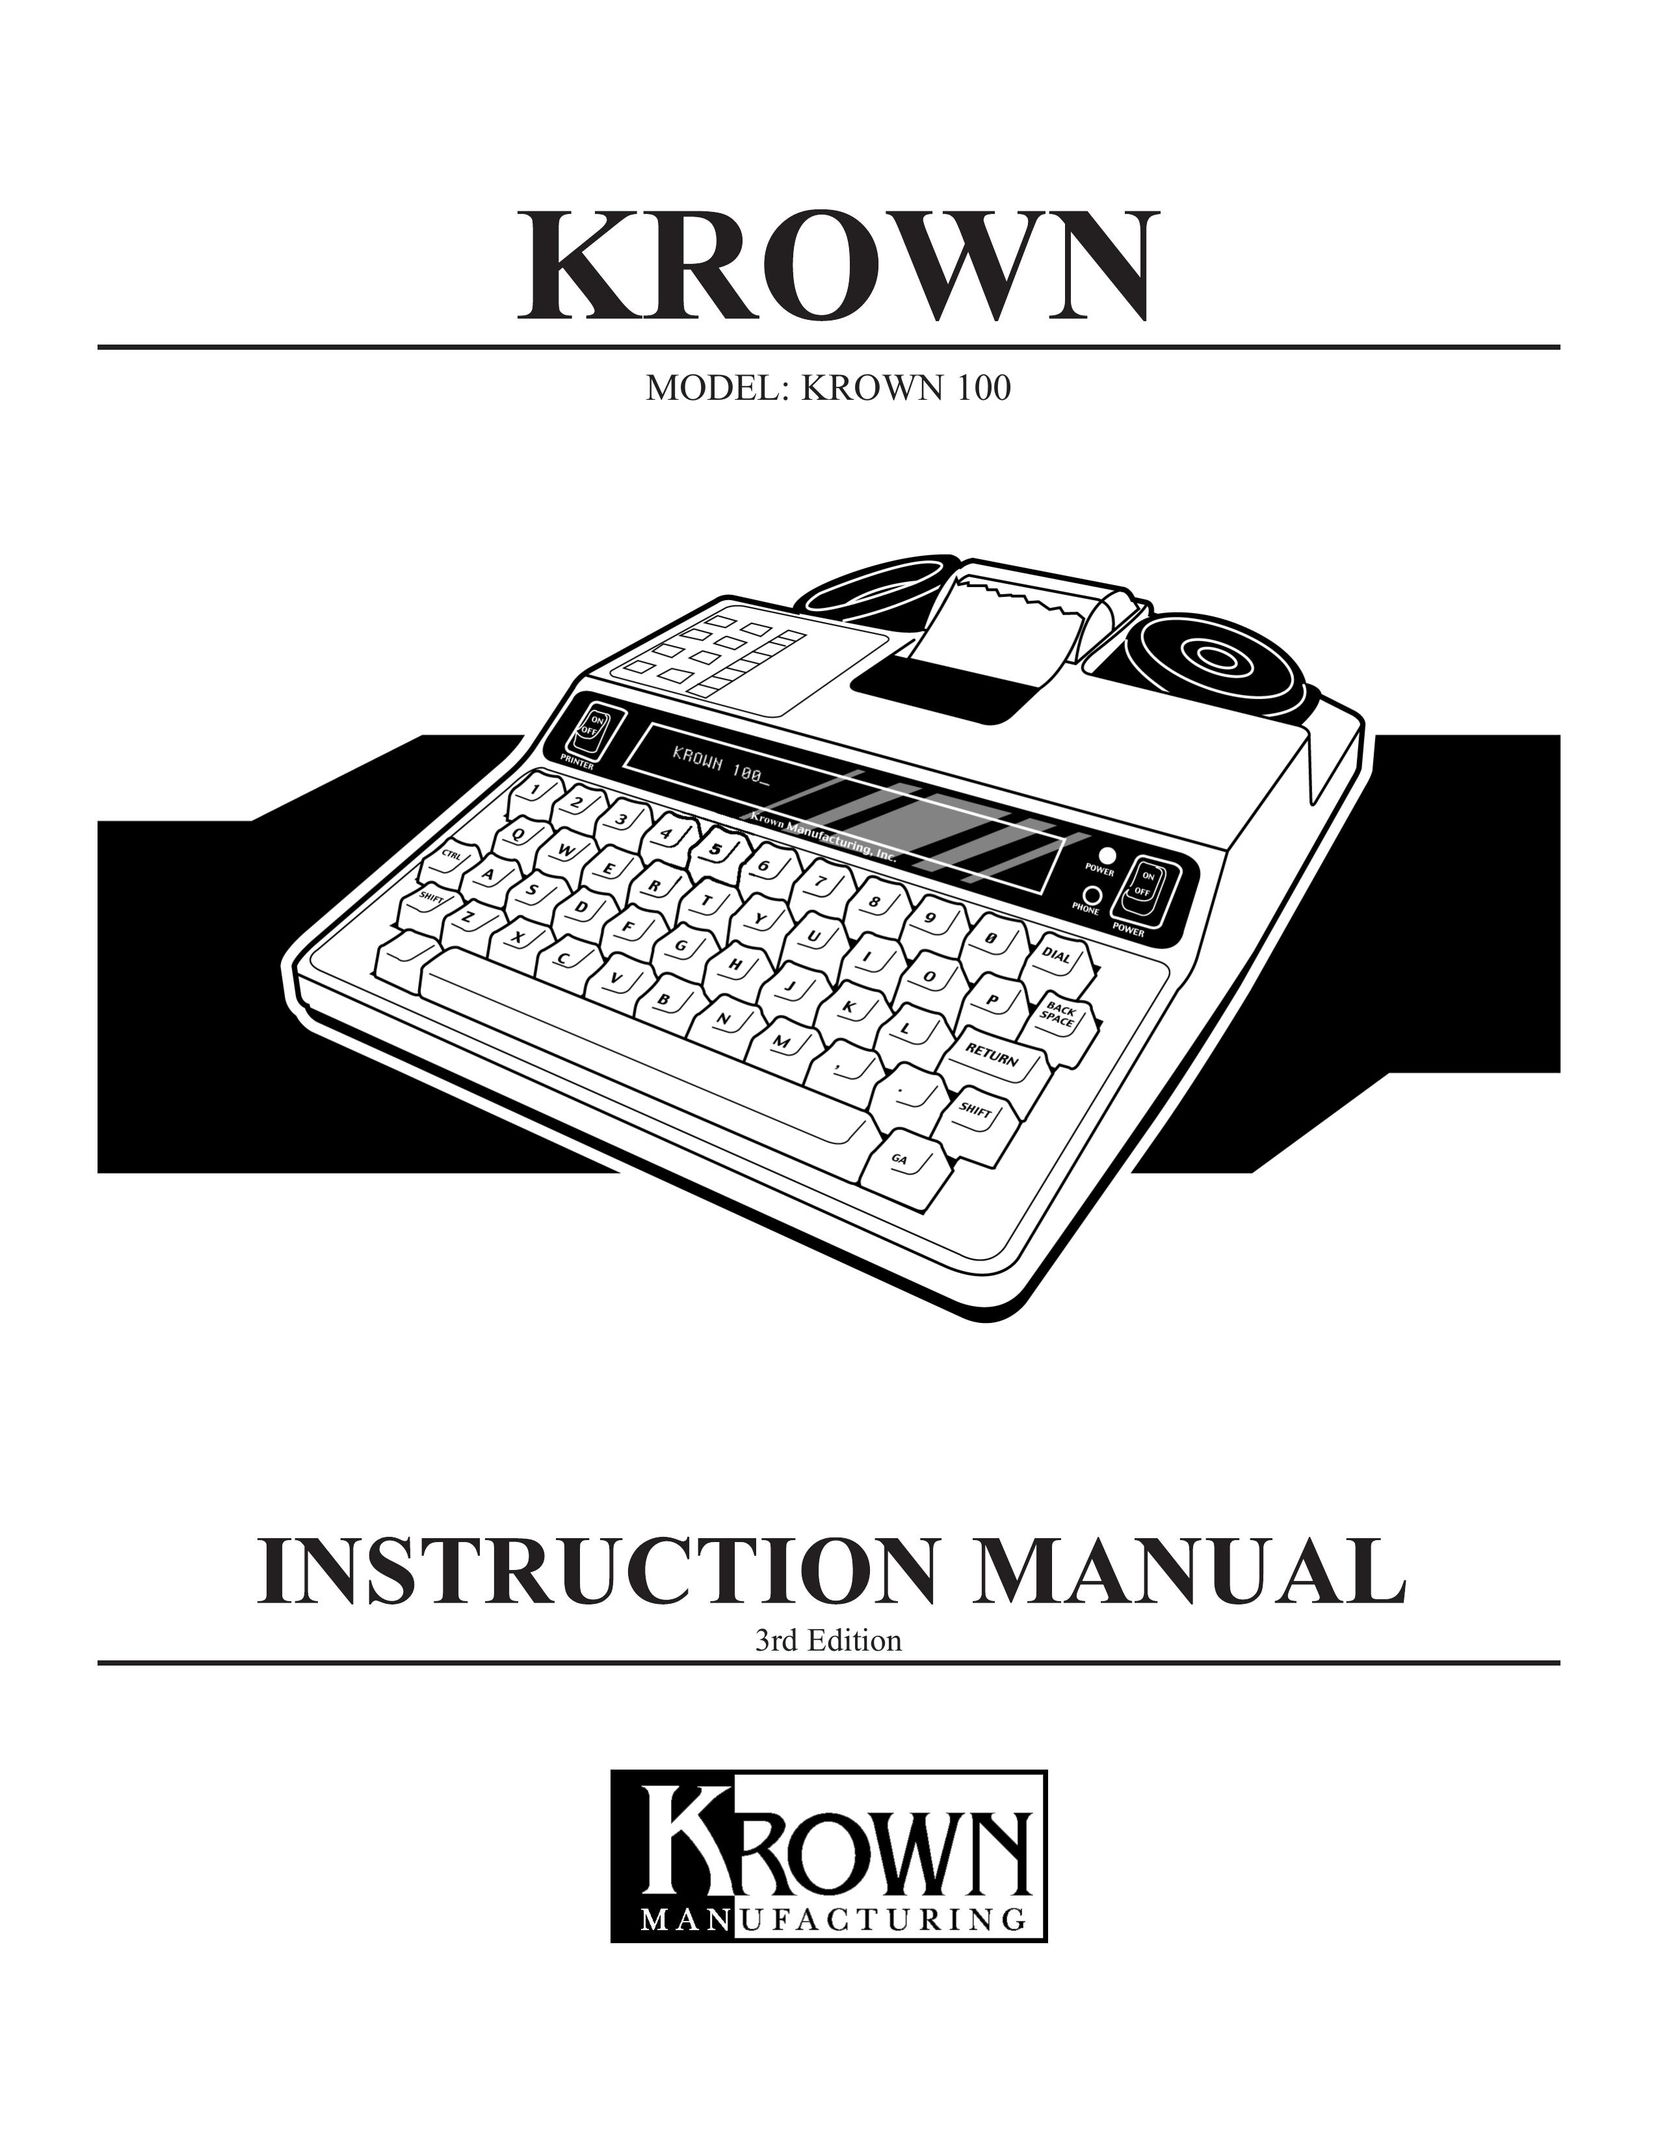 Krown Manufacturing Model Krown 100 Answering Machine User Manual